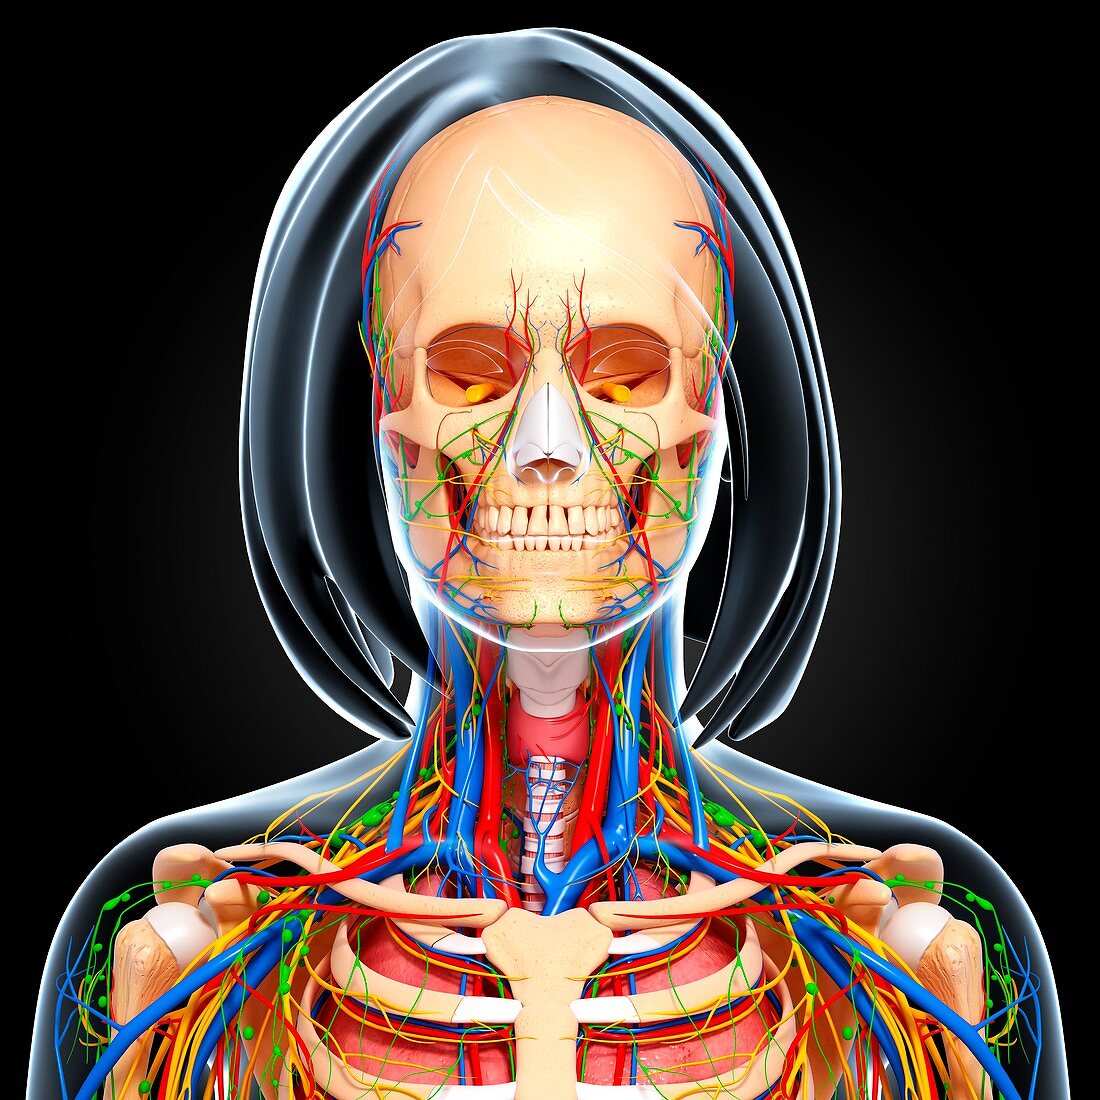 Upper body anatomy,artwork